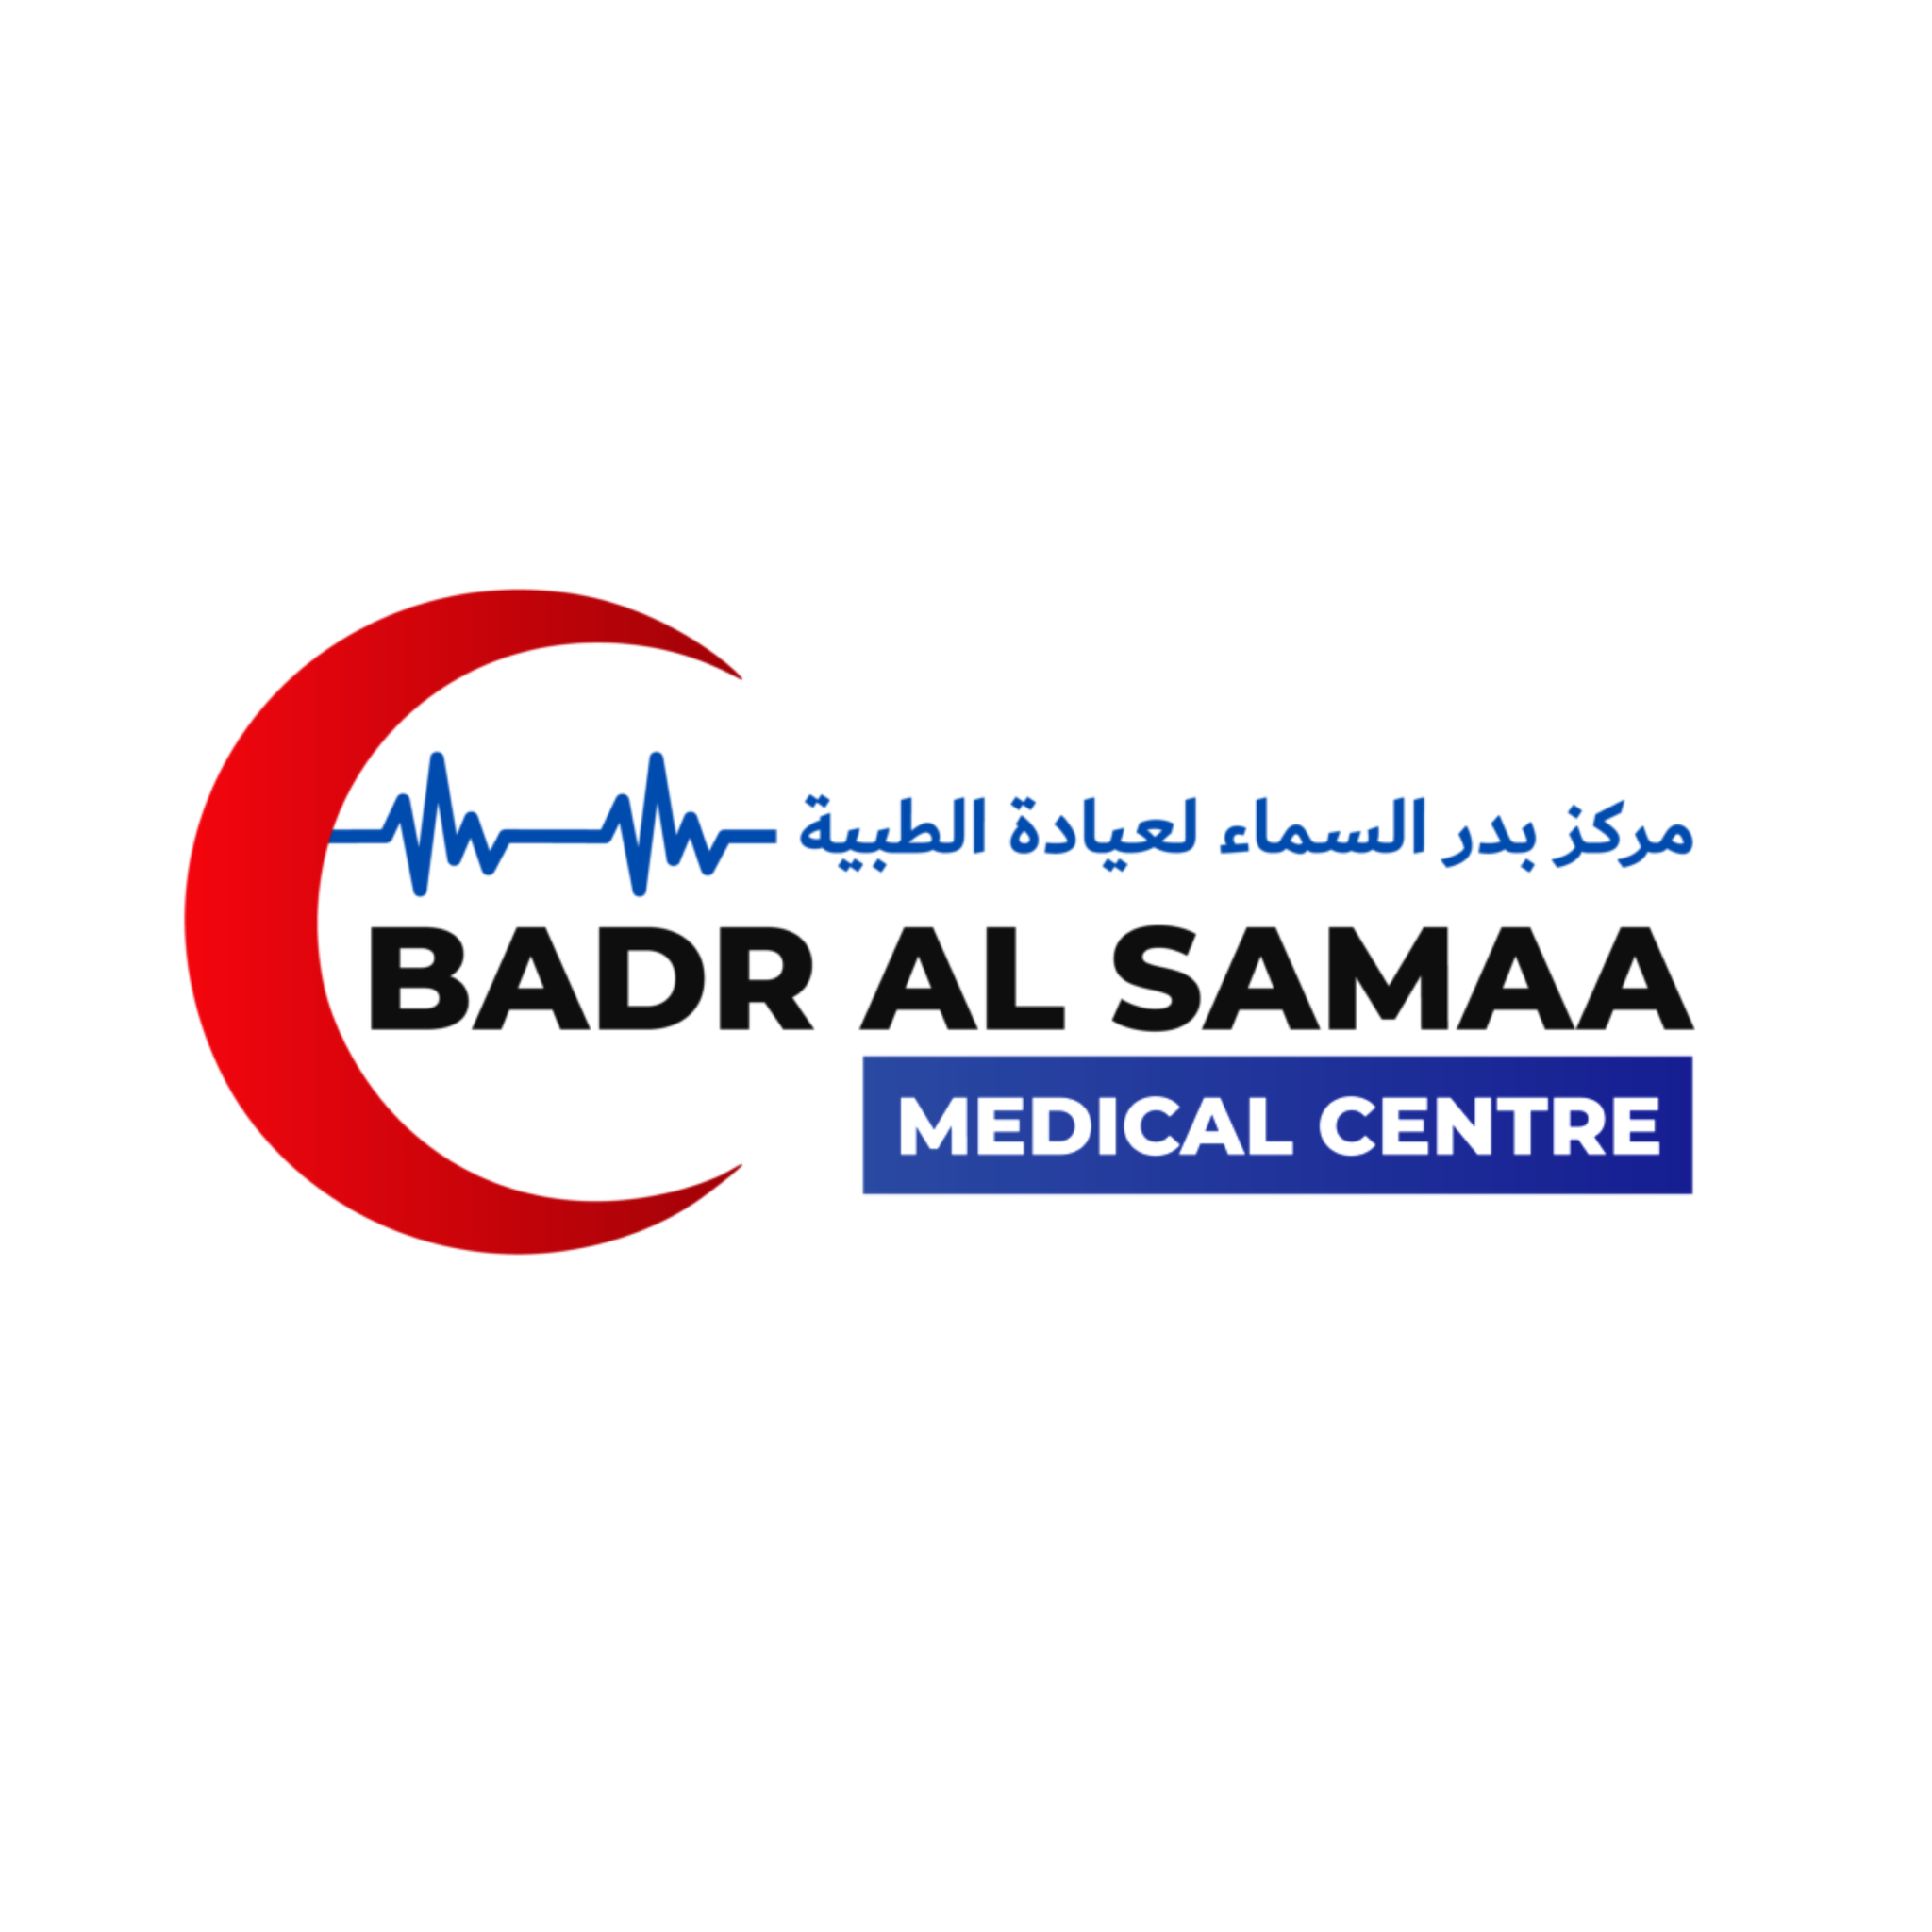 Badr Al Samaa Medical Centre